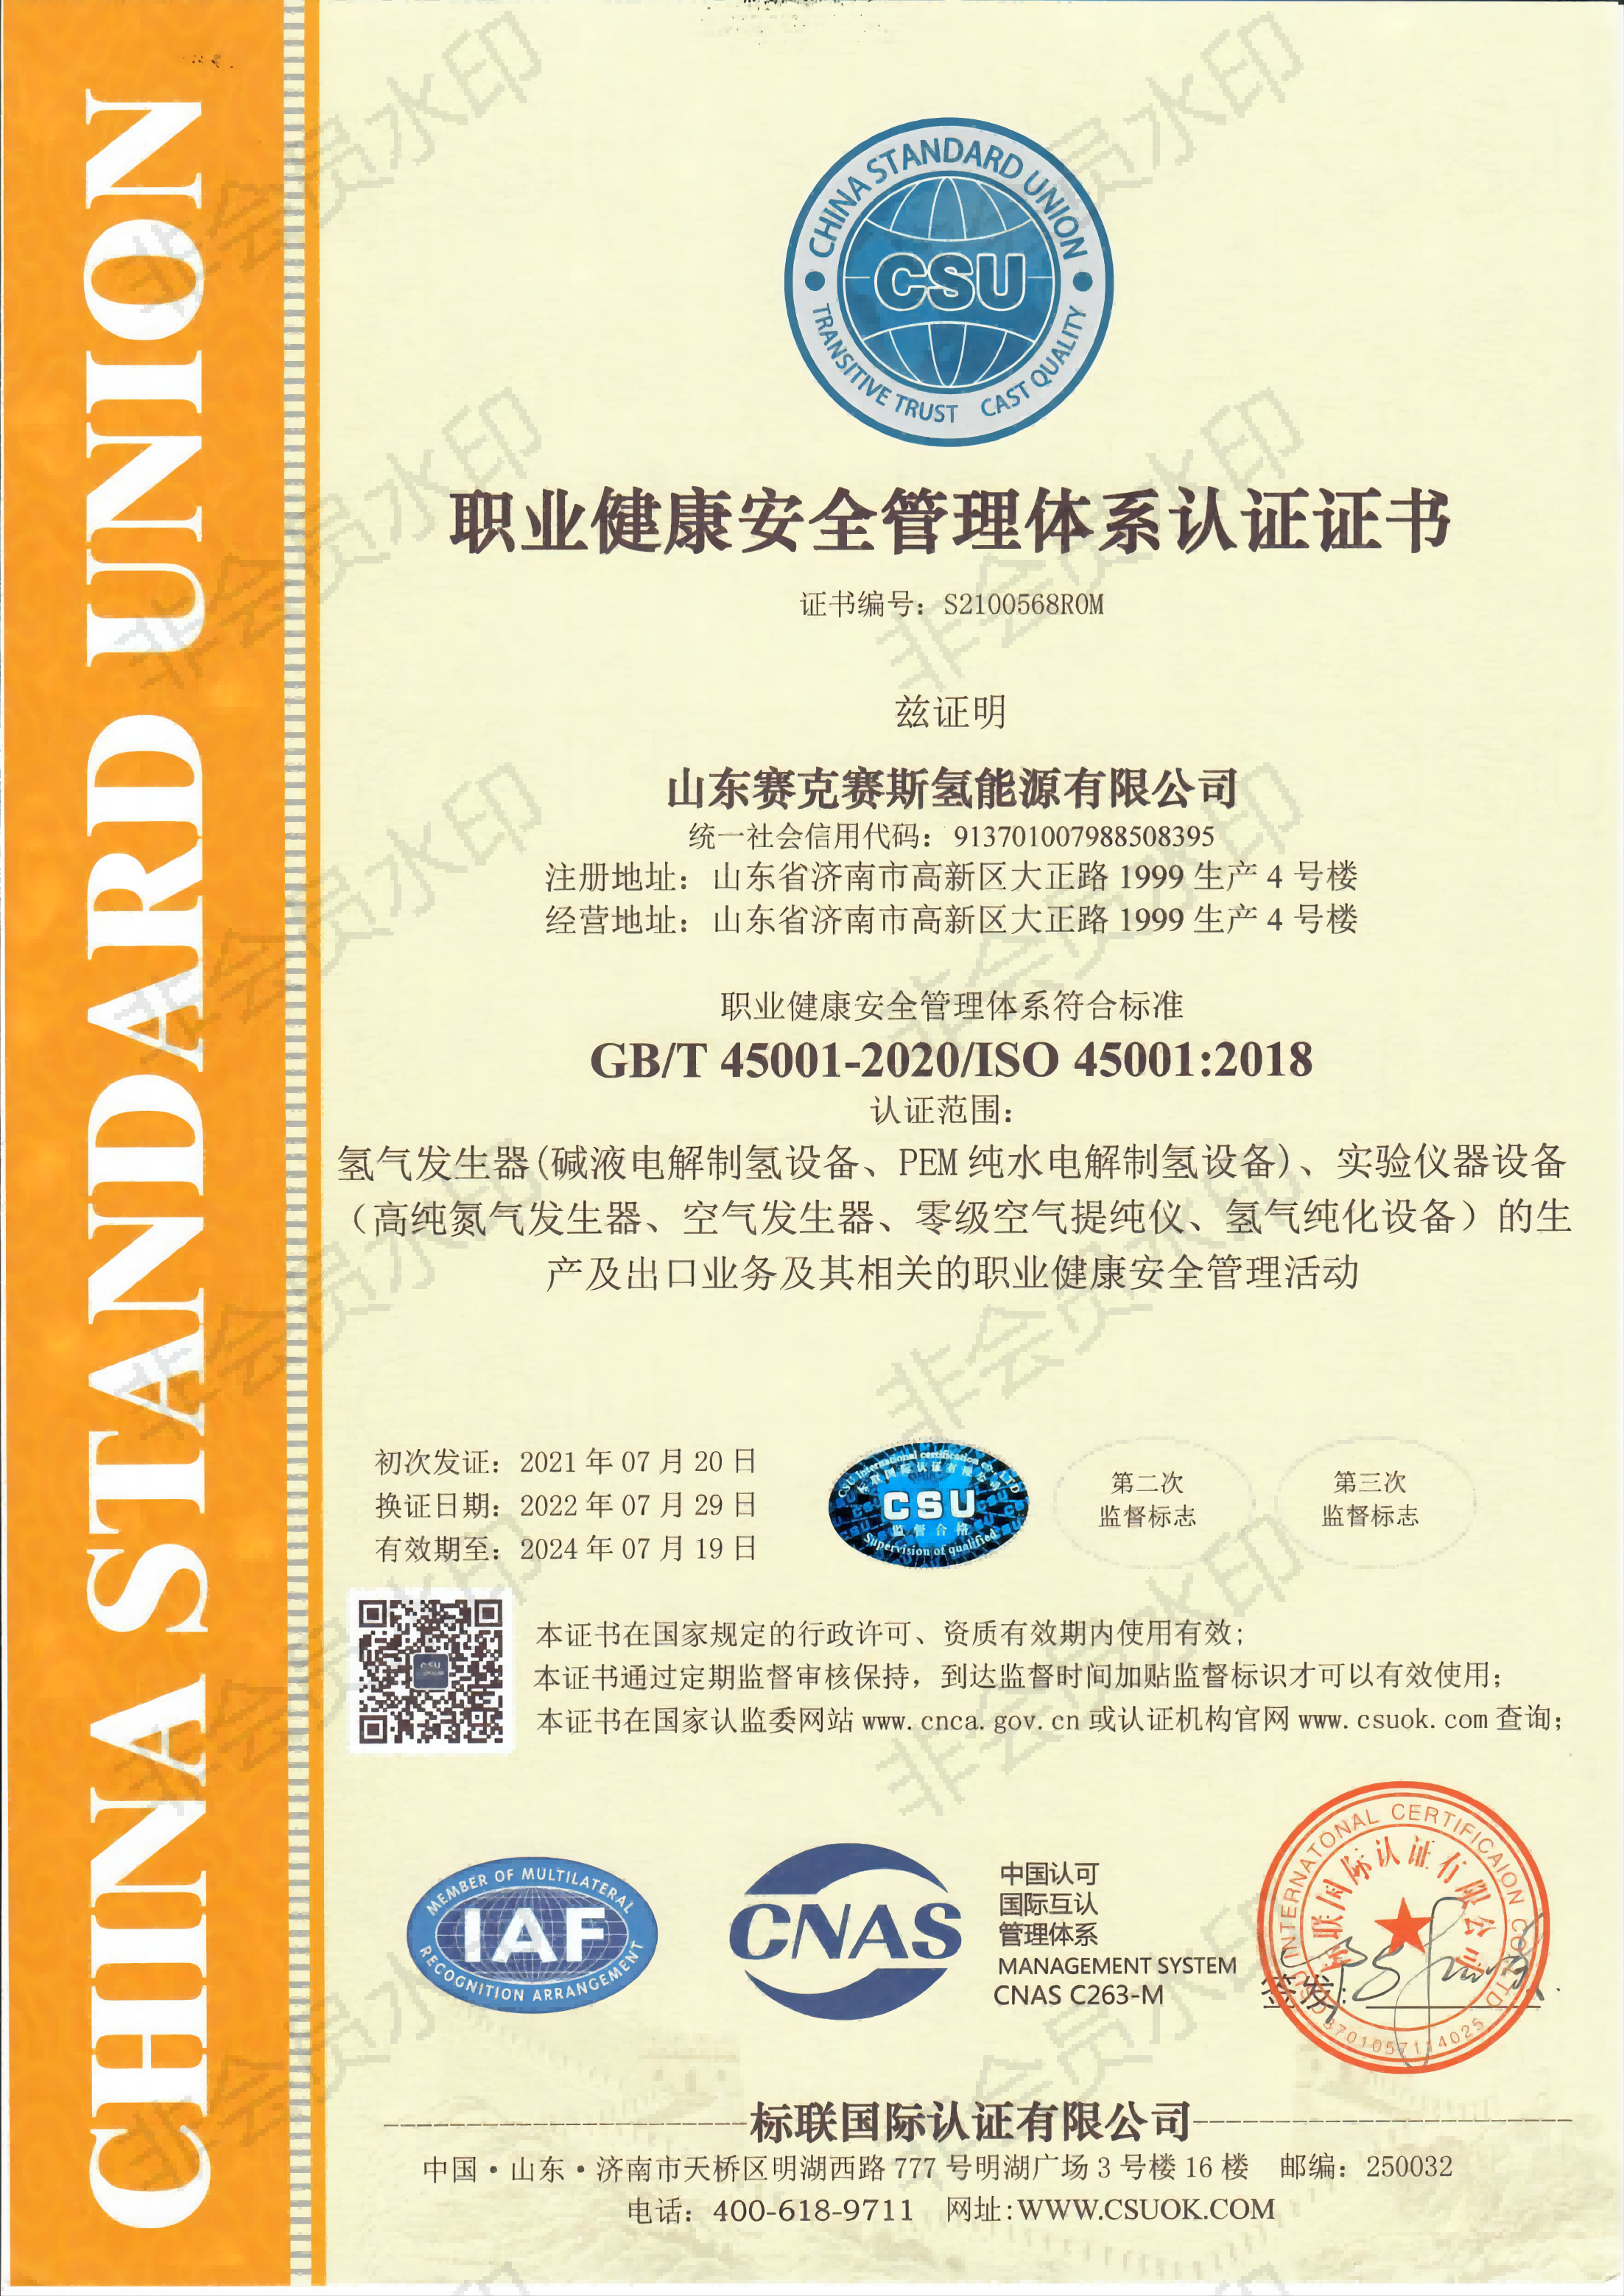 19、职业健康安全管理体系认证证书(1).png